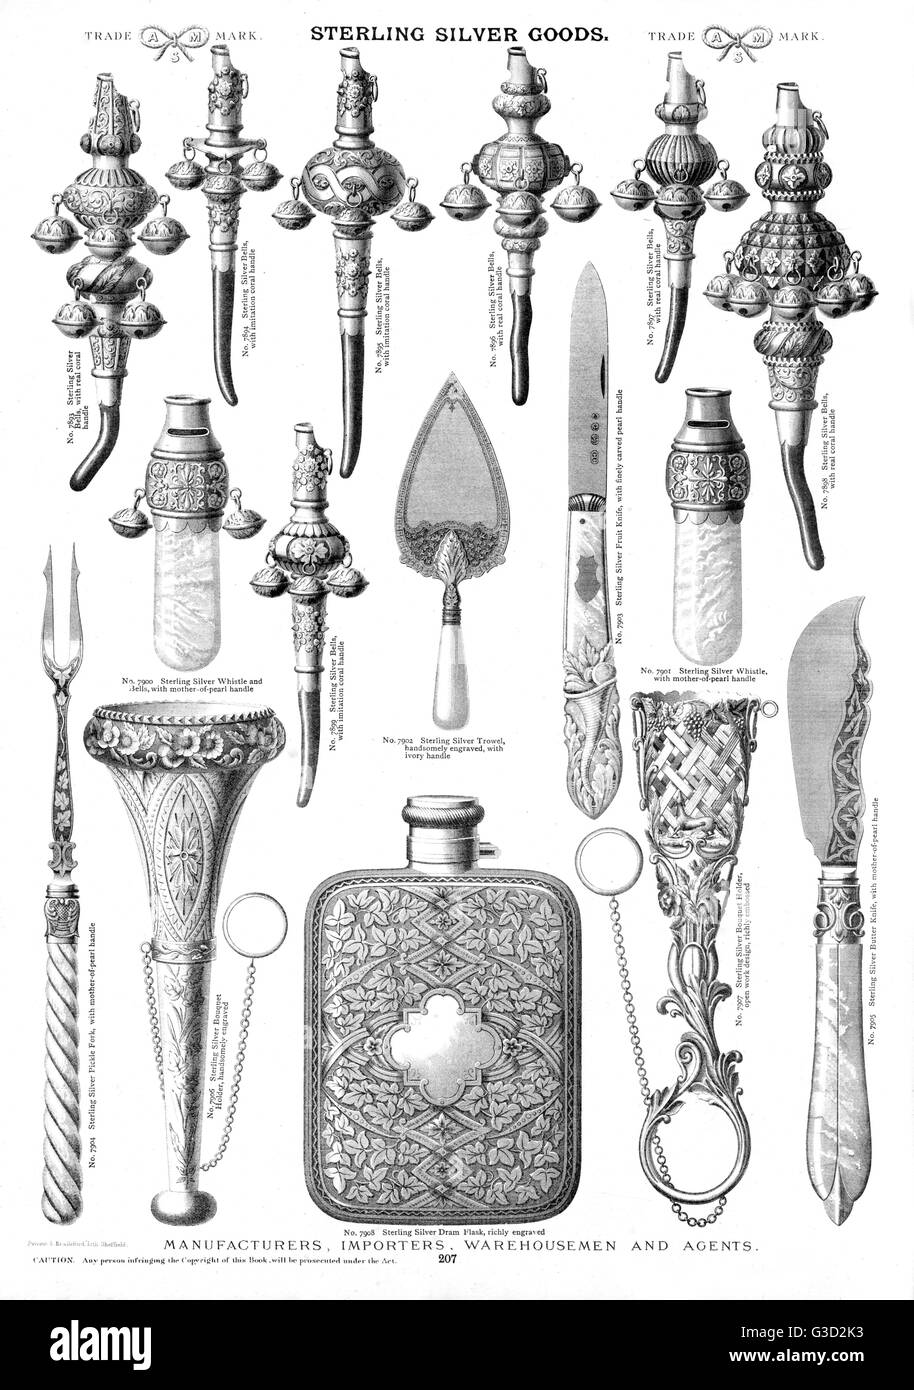 Sterling Silver mercancías, placa 207, mostrando las campanas, una llana, ramo titulares, silbatos, un frasco de DRAM, cubertería y otros artículos. Fecha: circa 1880 Foto de stock